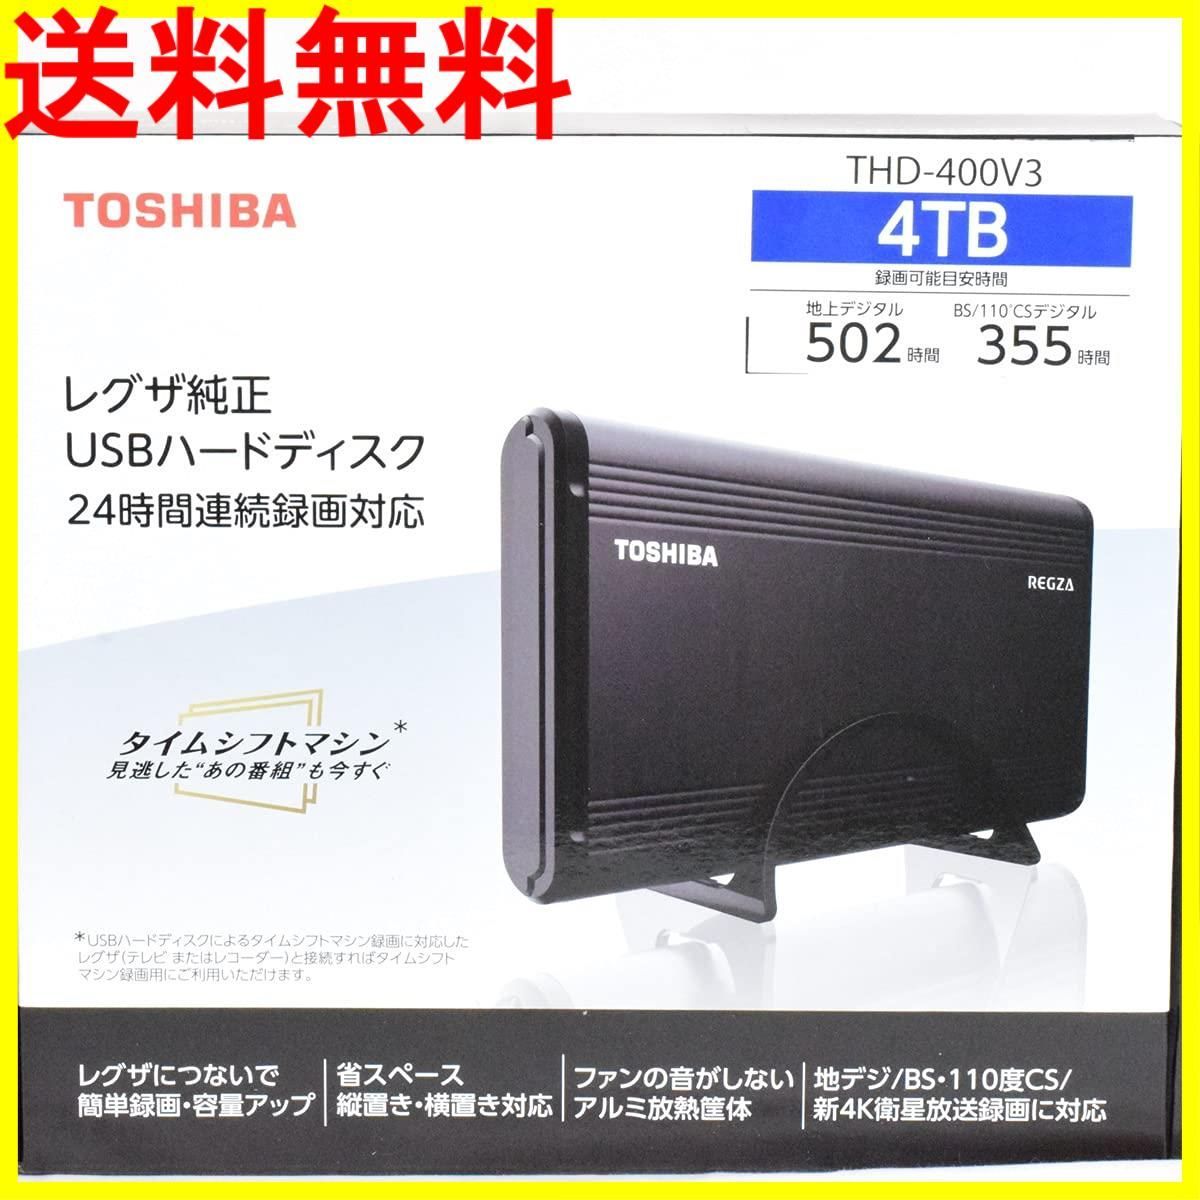 【きのどちら】 TOSHIBA 東芝 THD-400V3 USBハードディスク 4TB THD400V3 キムラヤPayPayモール店